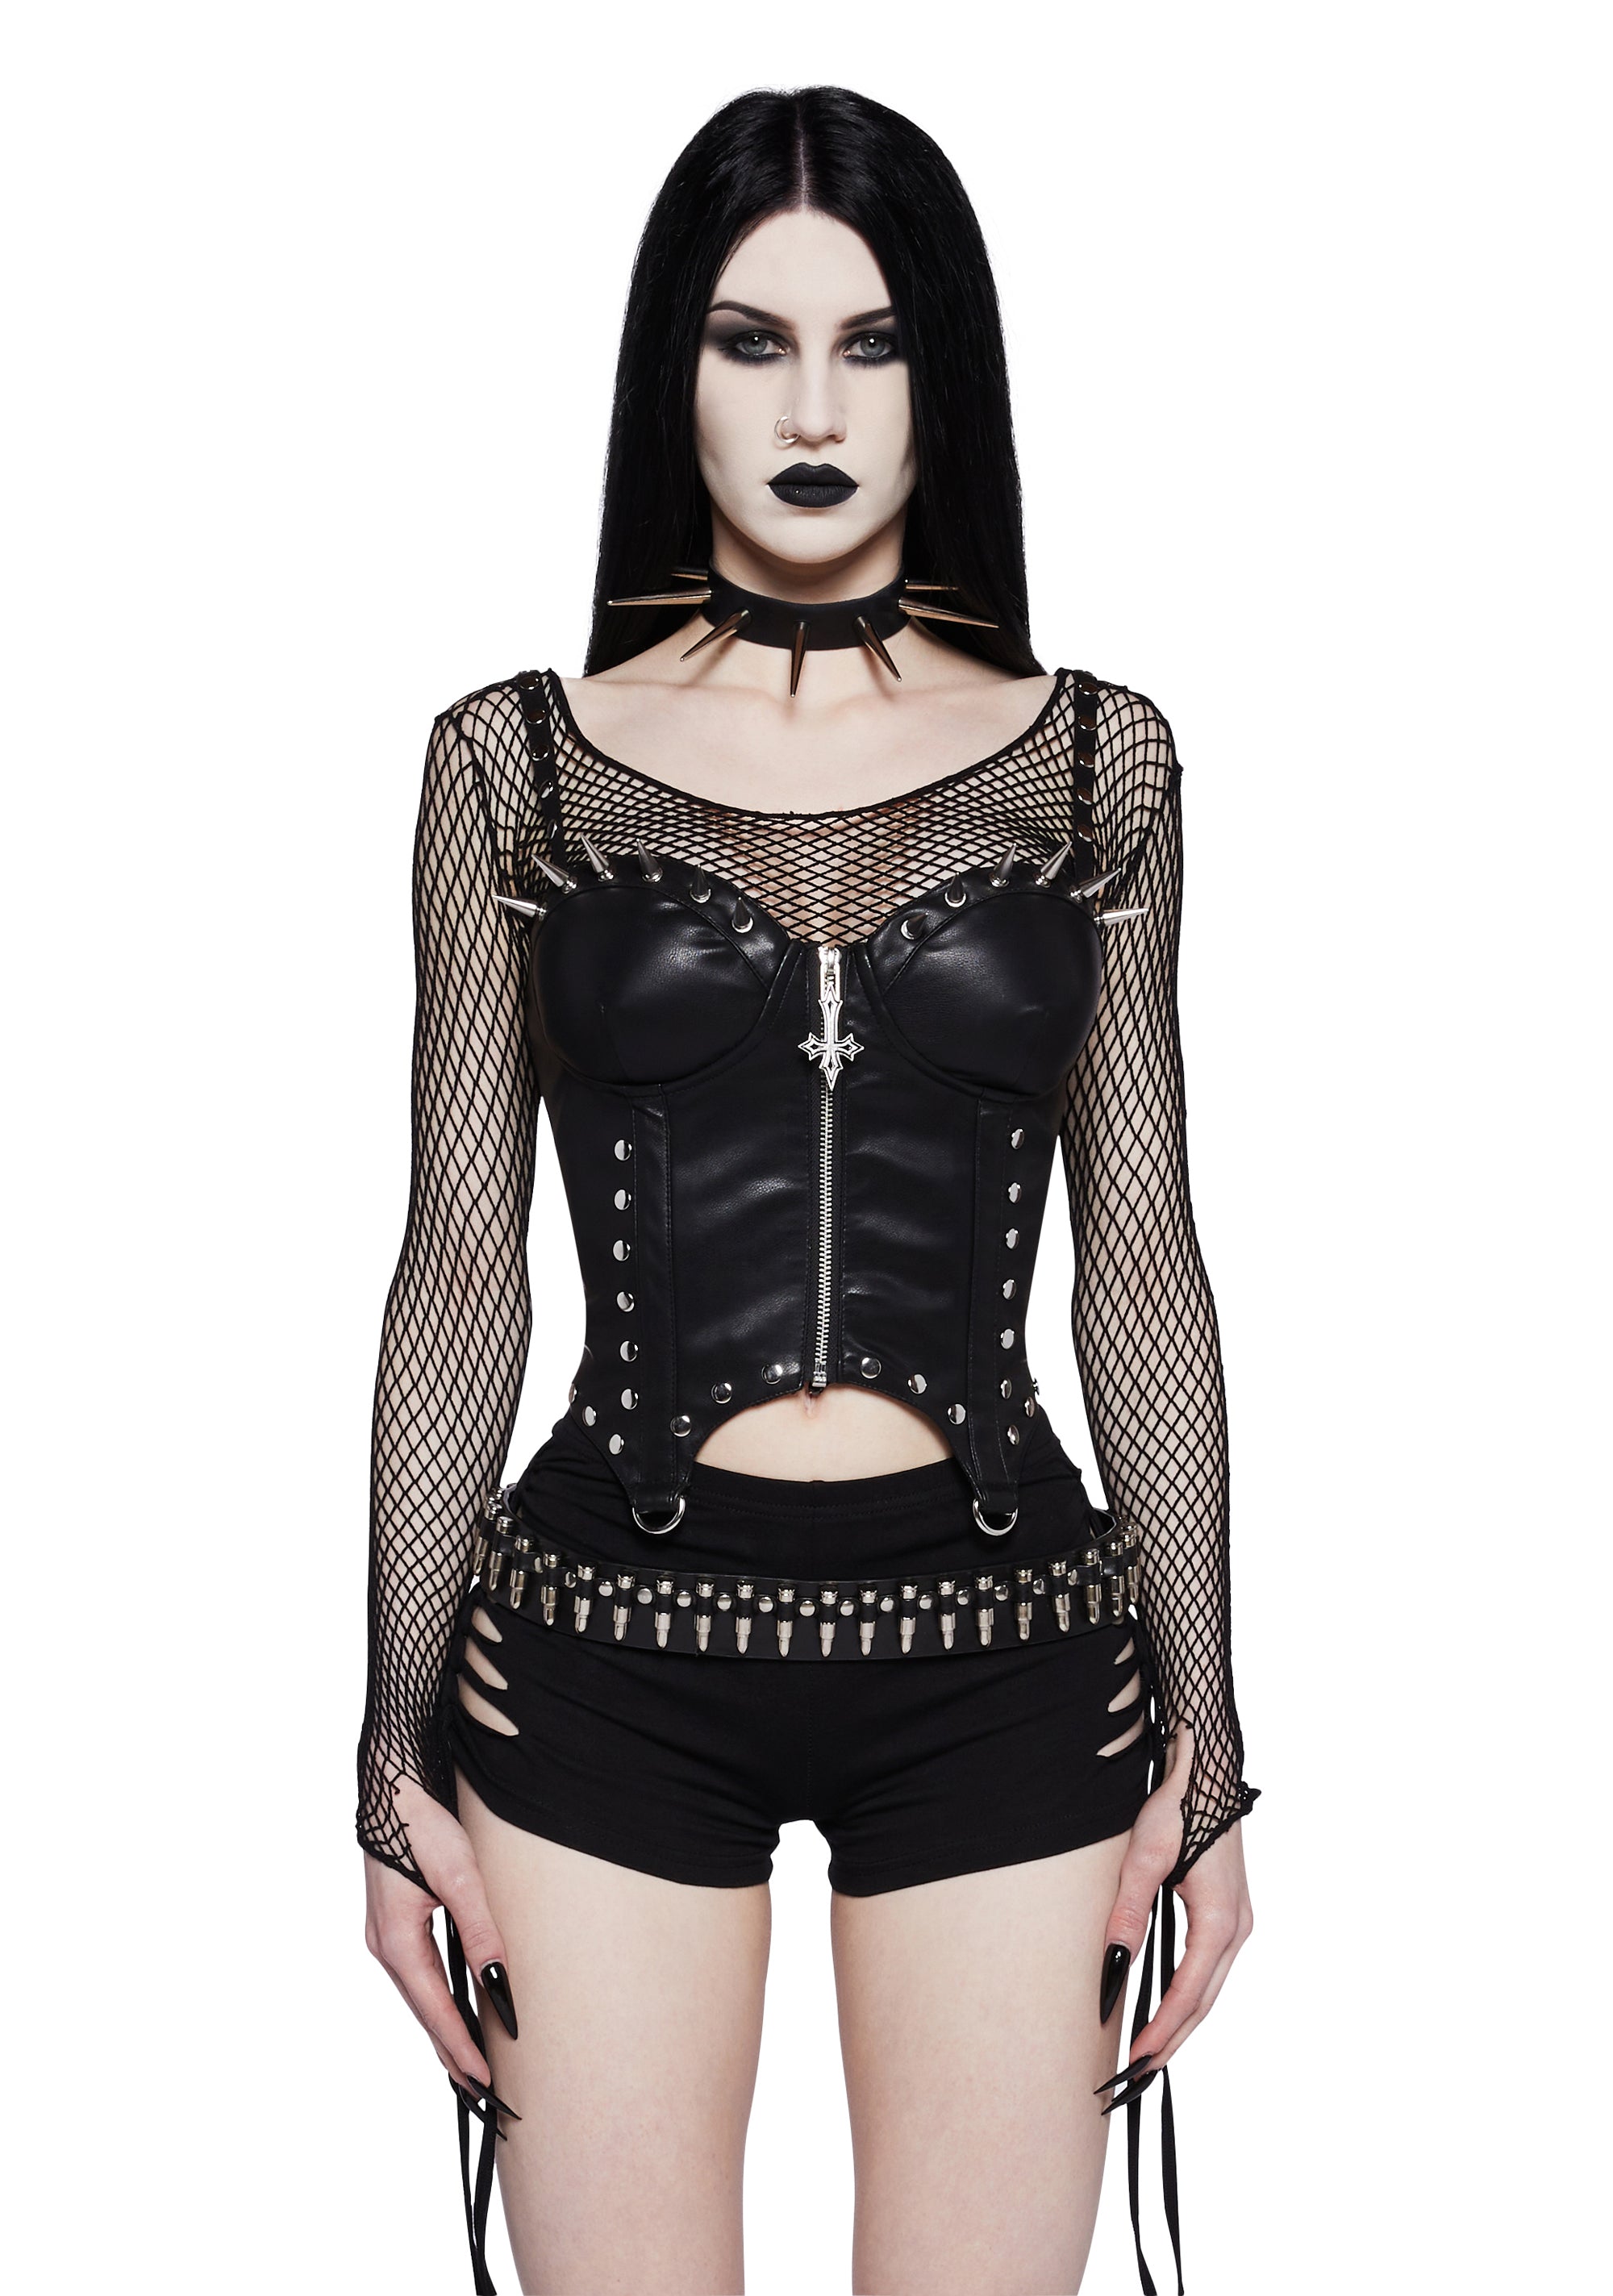 http://www.dollskill.com/cdn/shop/products/s1865379_f_r_widow_pu_corset_top_w_spiked_cups_black_290089_0061_24_02_12.jpg?v=1709070740